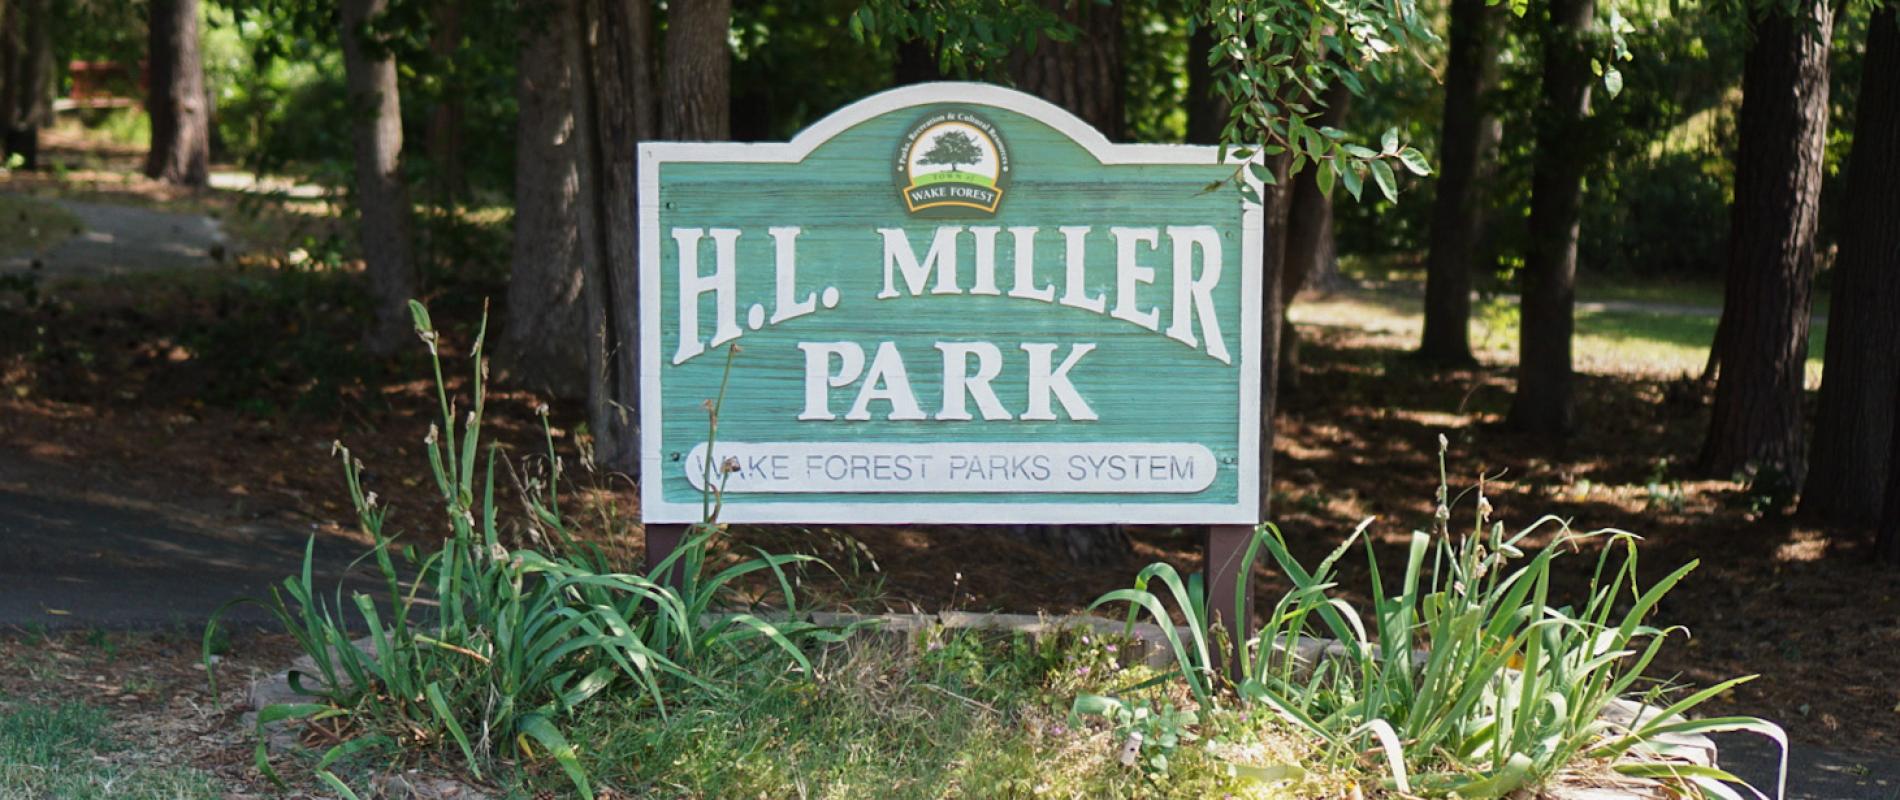 Miller Park Sign